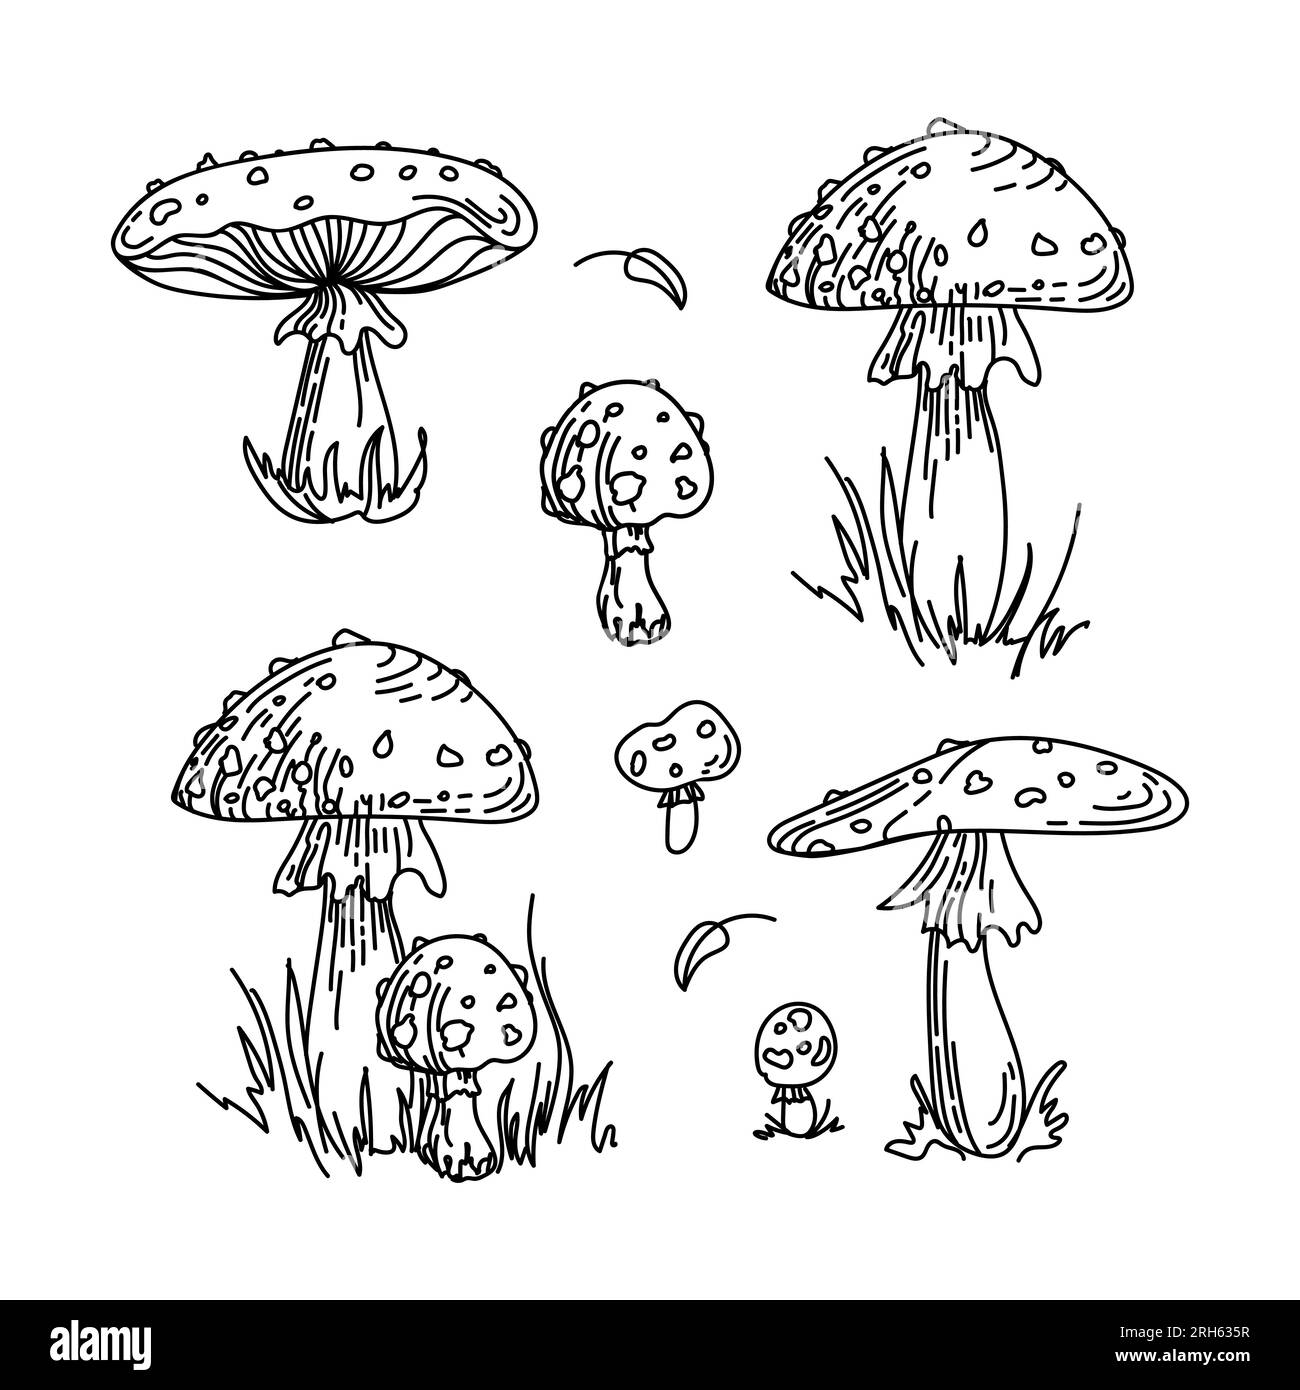 Fliegenagar, Amanita, nicht essbare giftige Pilze. Wunderschöne handgezeichnete grafische Zeichnung. Für Aufkleber, Poster, Postkarten, Designelemente Stock Vektor